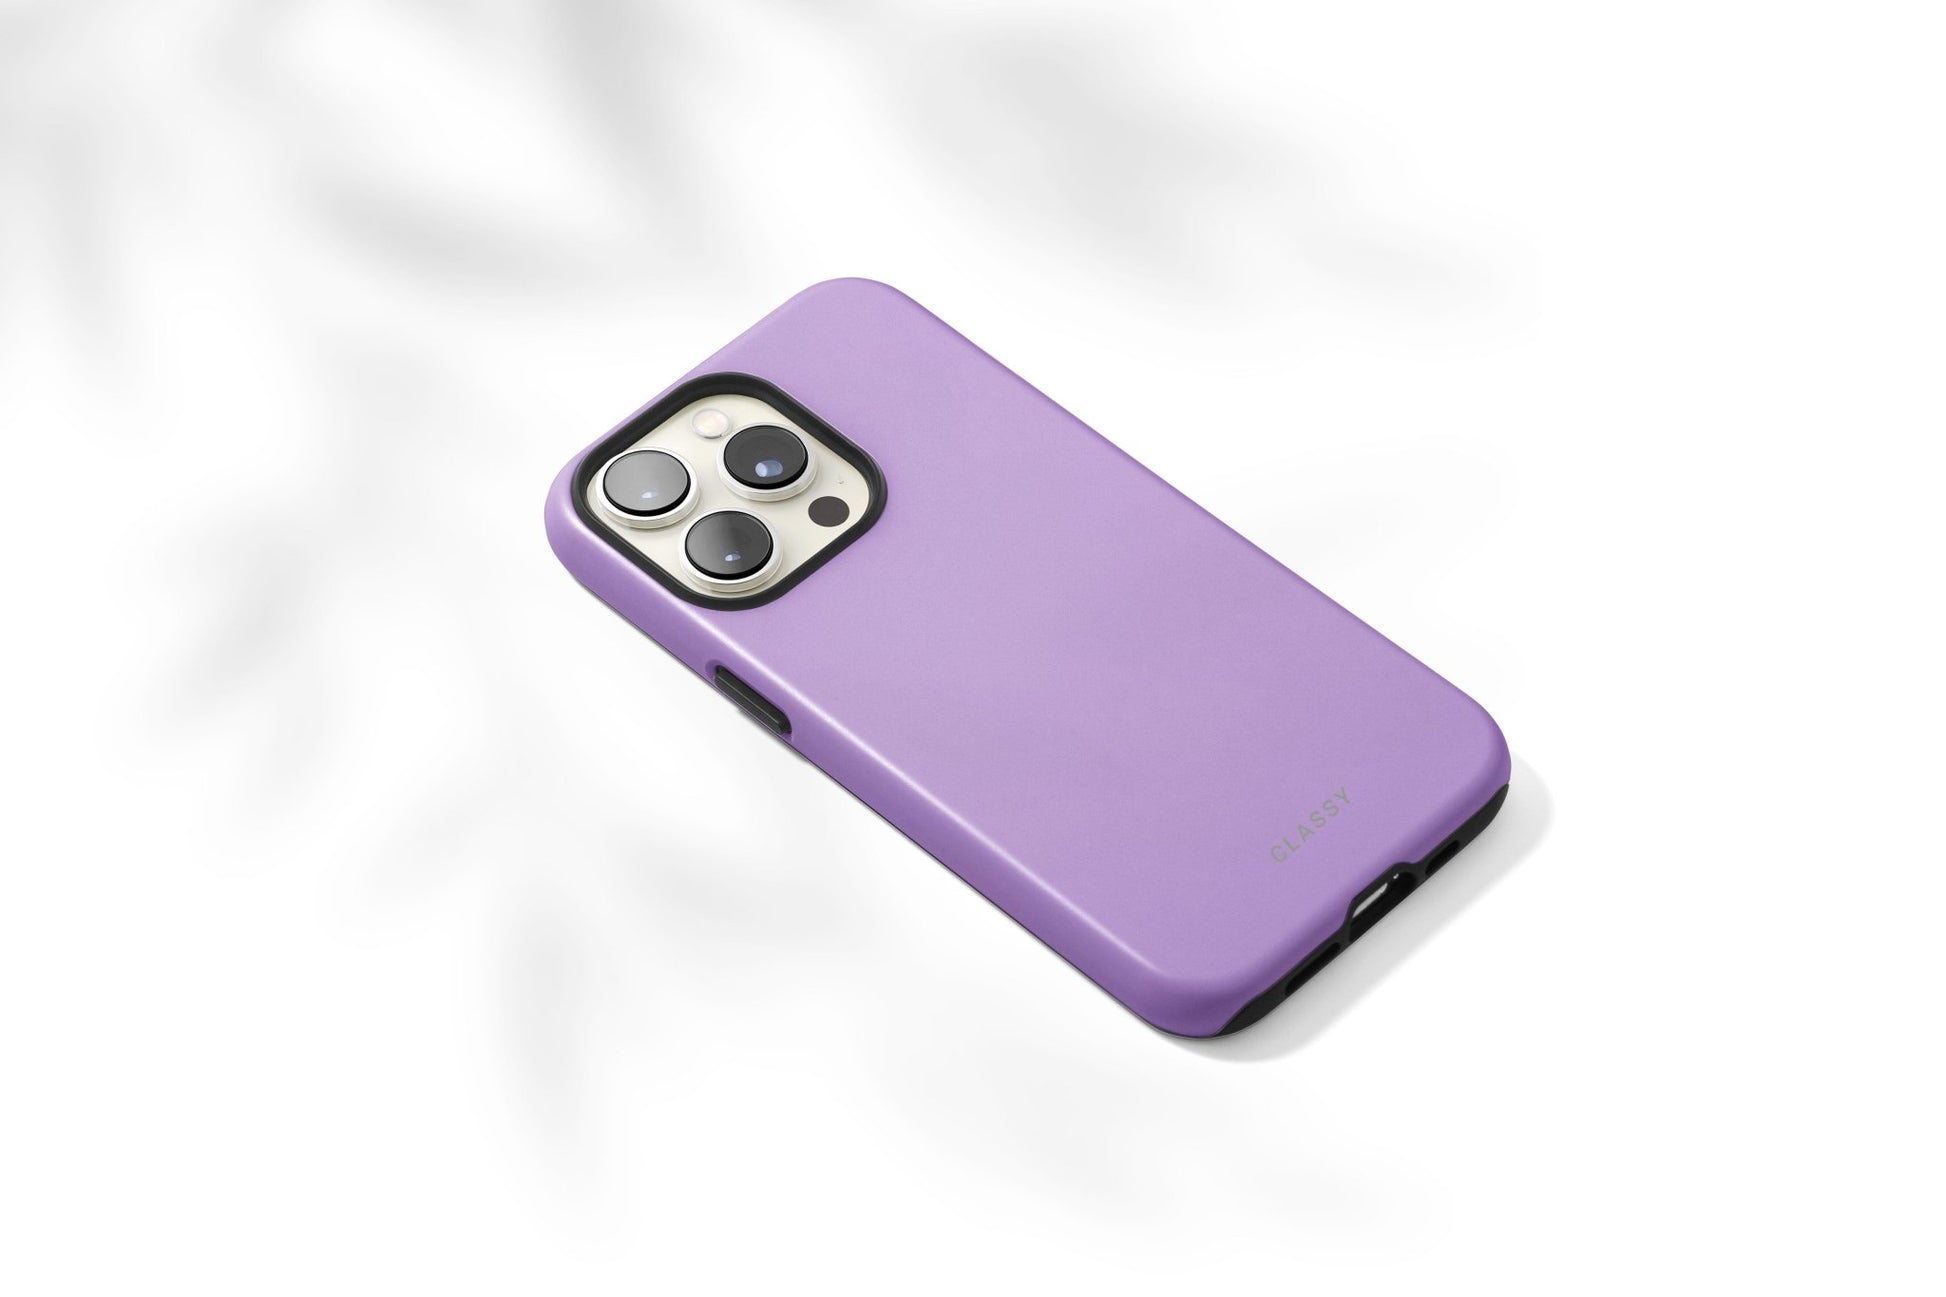 Pastel Purple Tough Case - Classy Cases